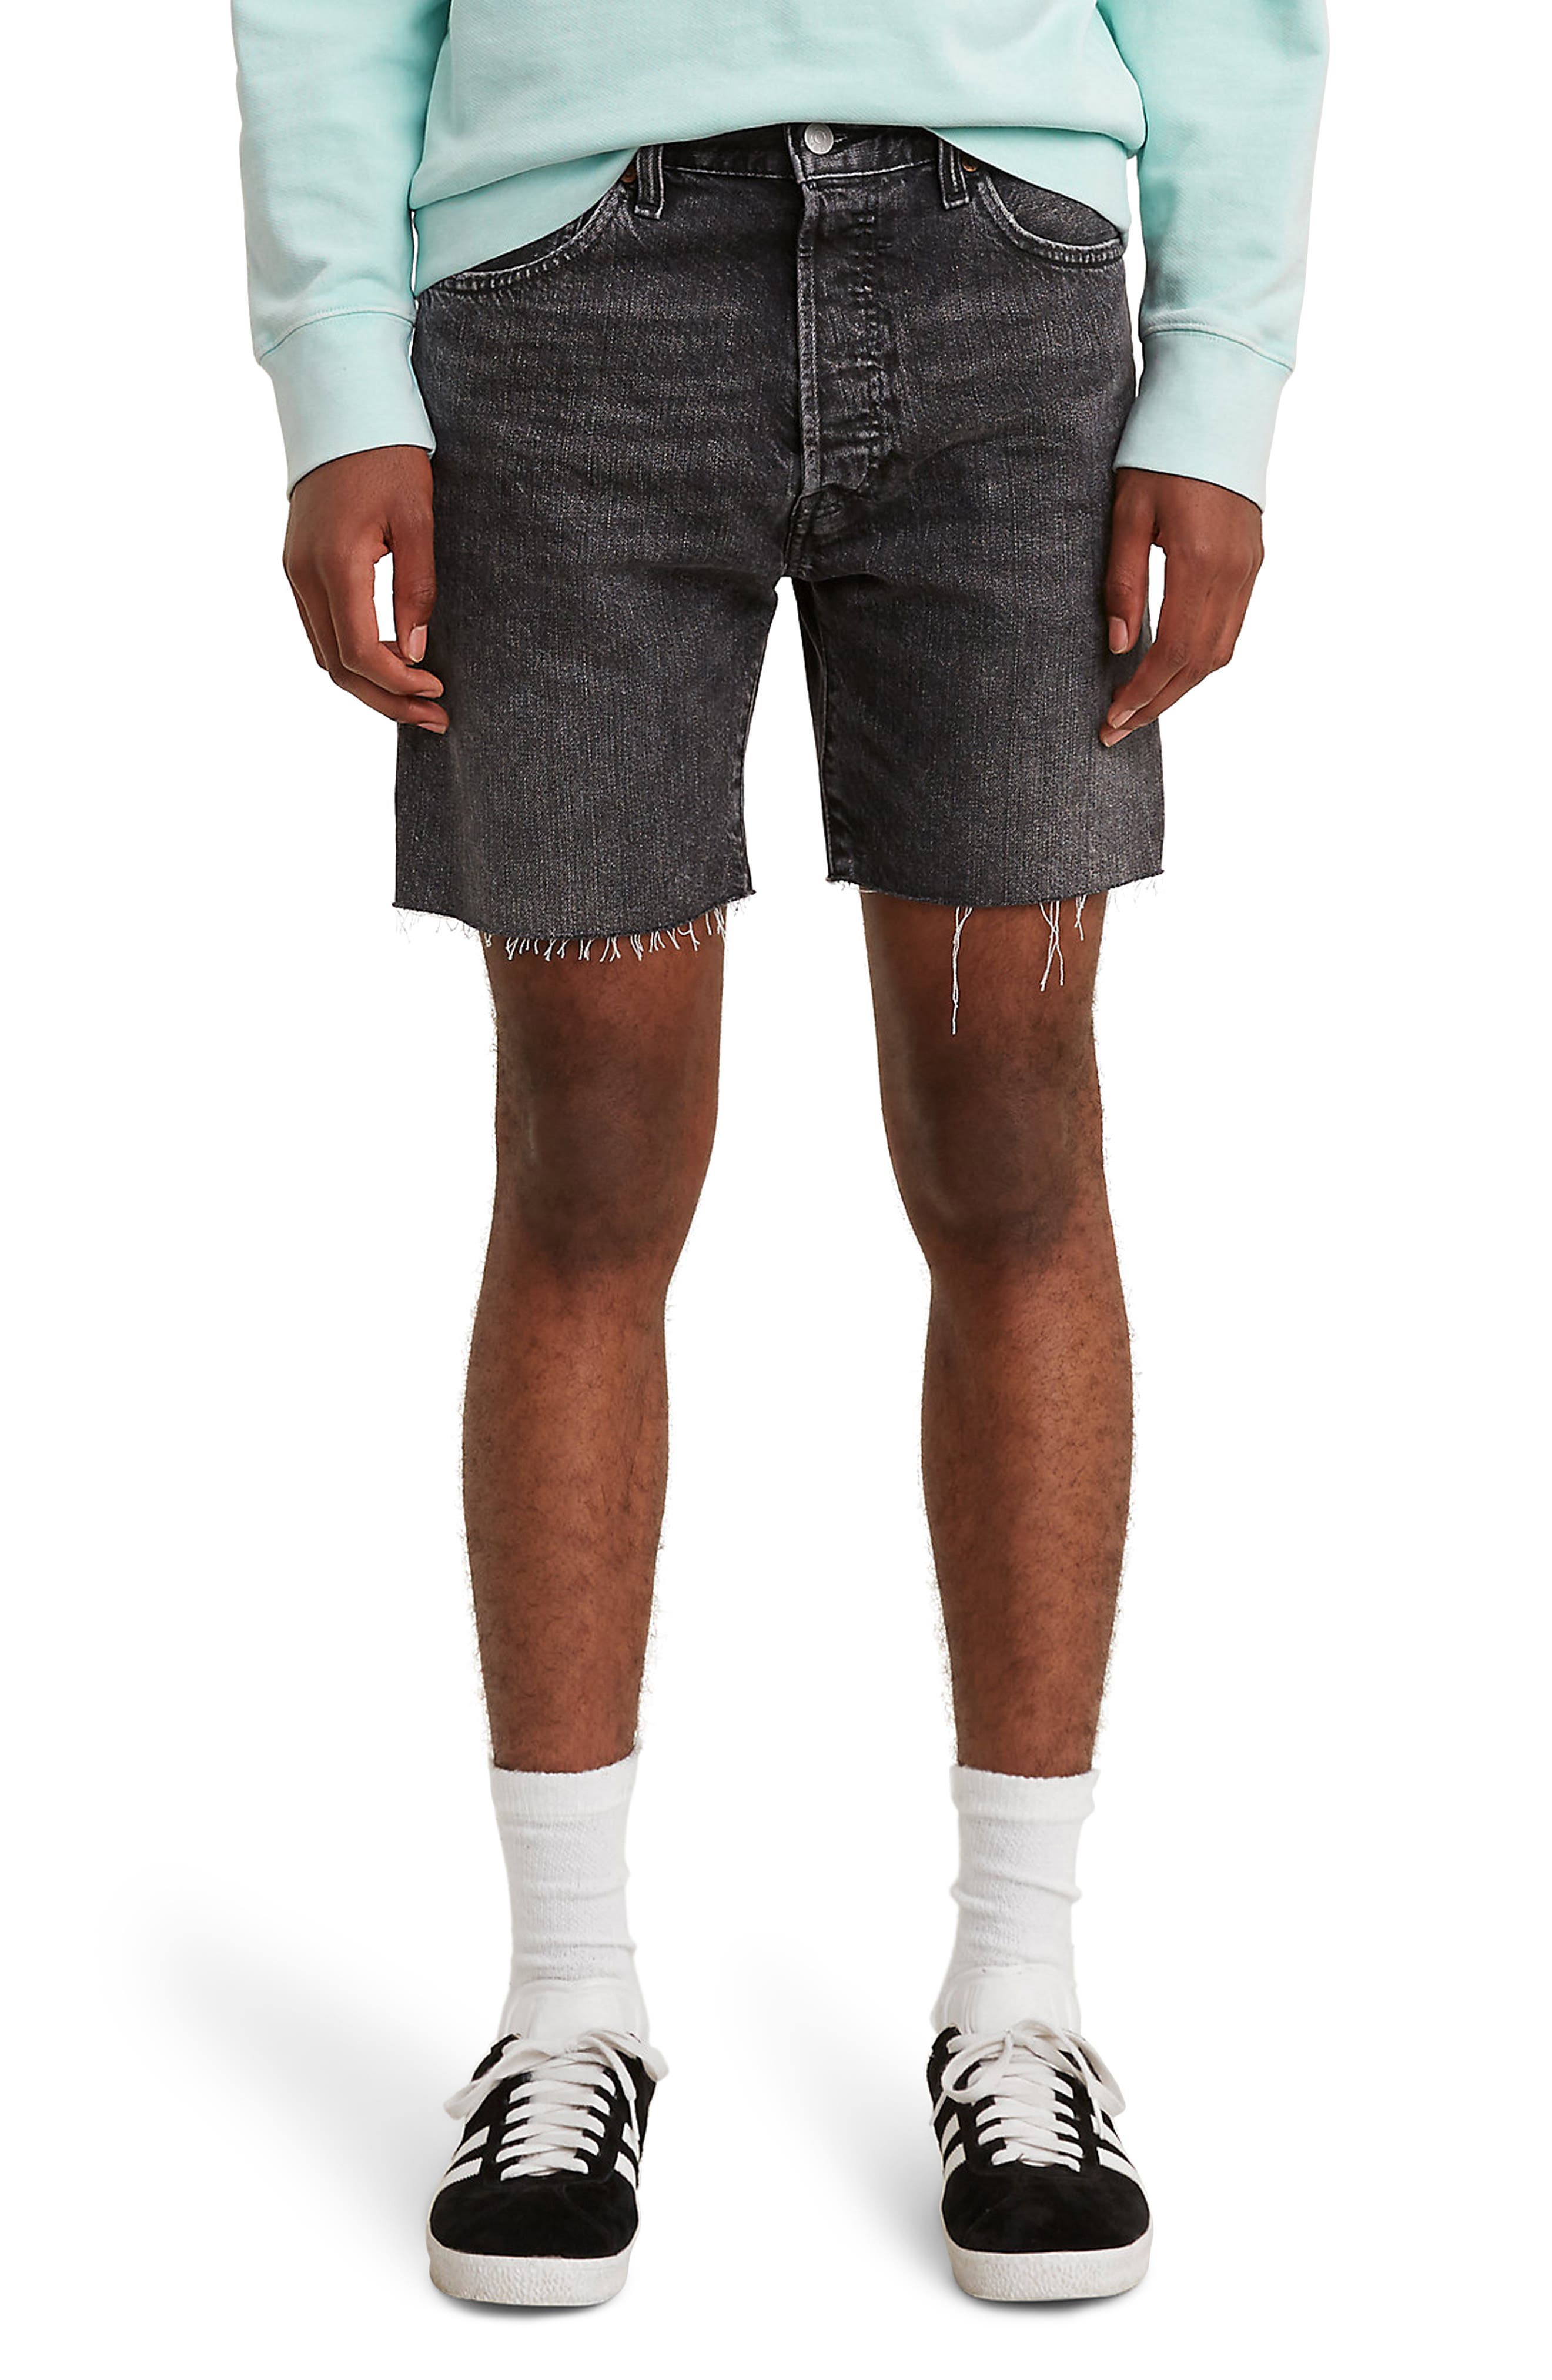 levi's jean shorts sale